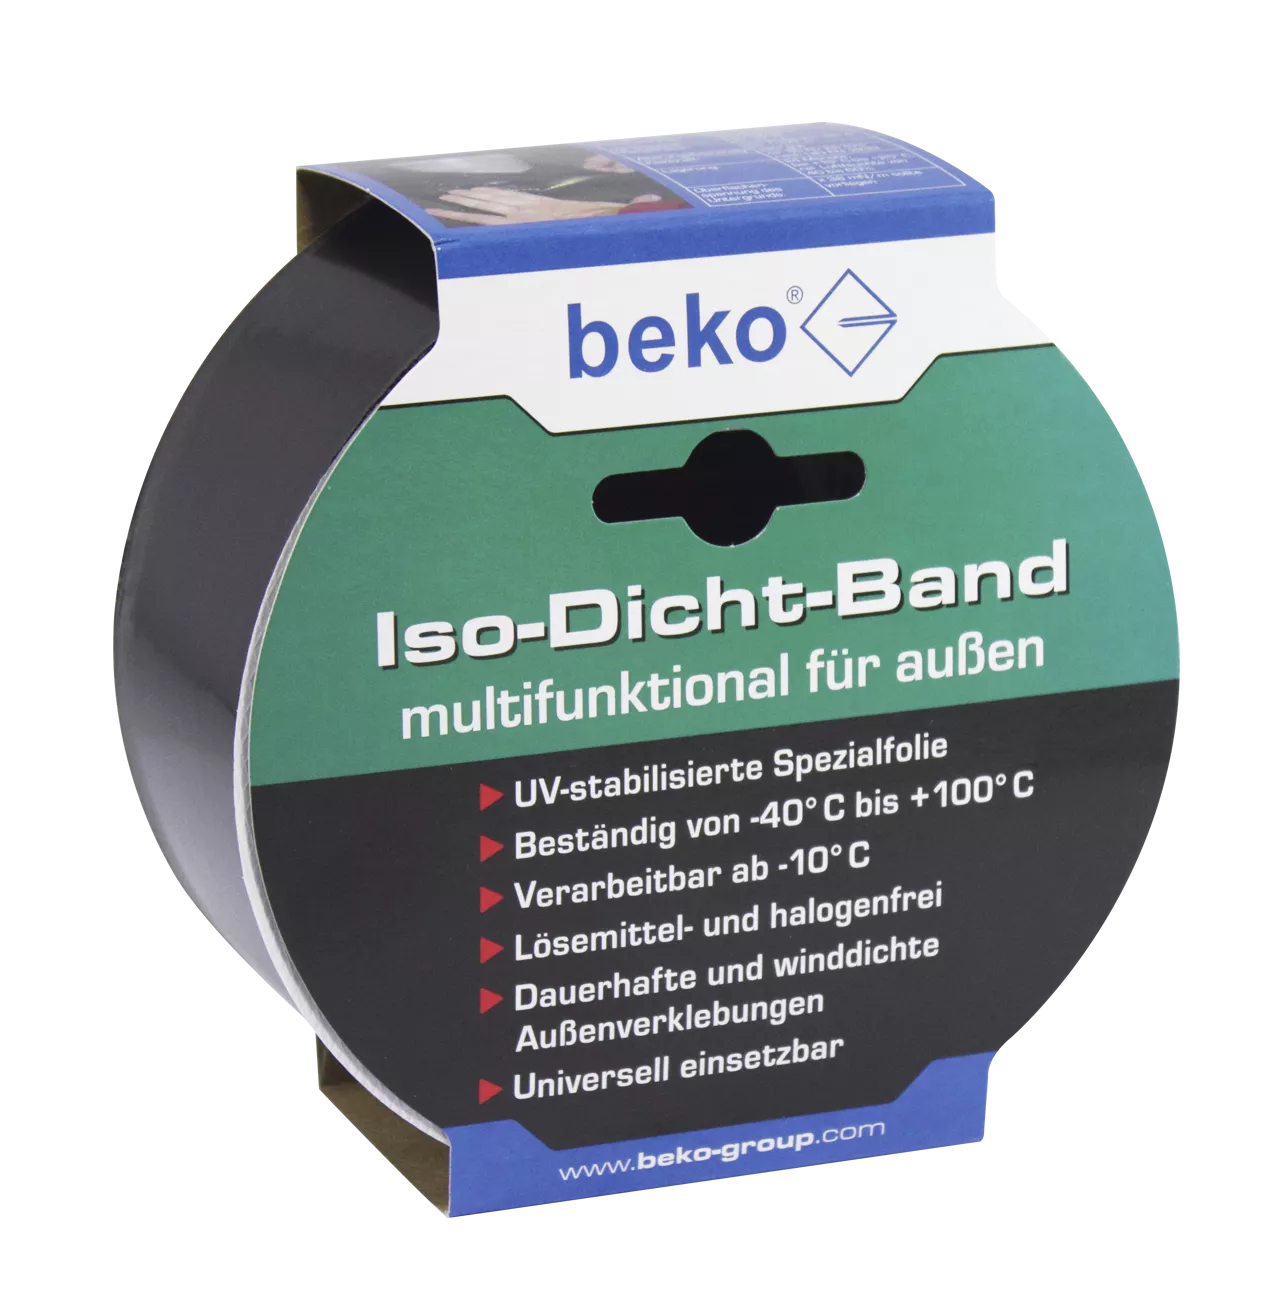 beko Iso-Dicht-Band 60 mm x 25 m SCHWARZ, für außen